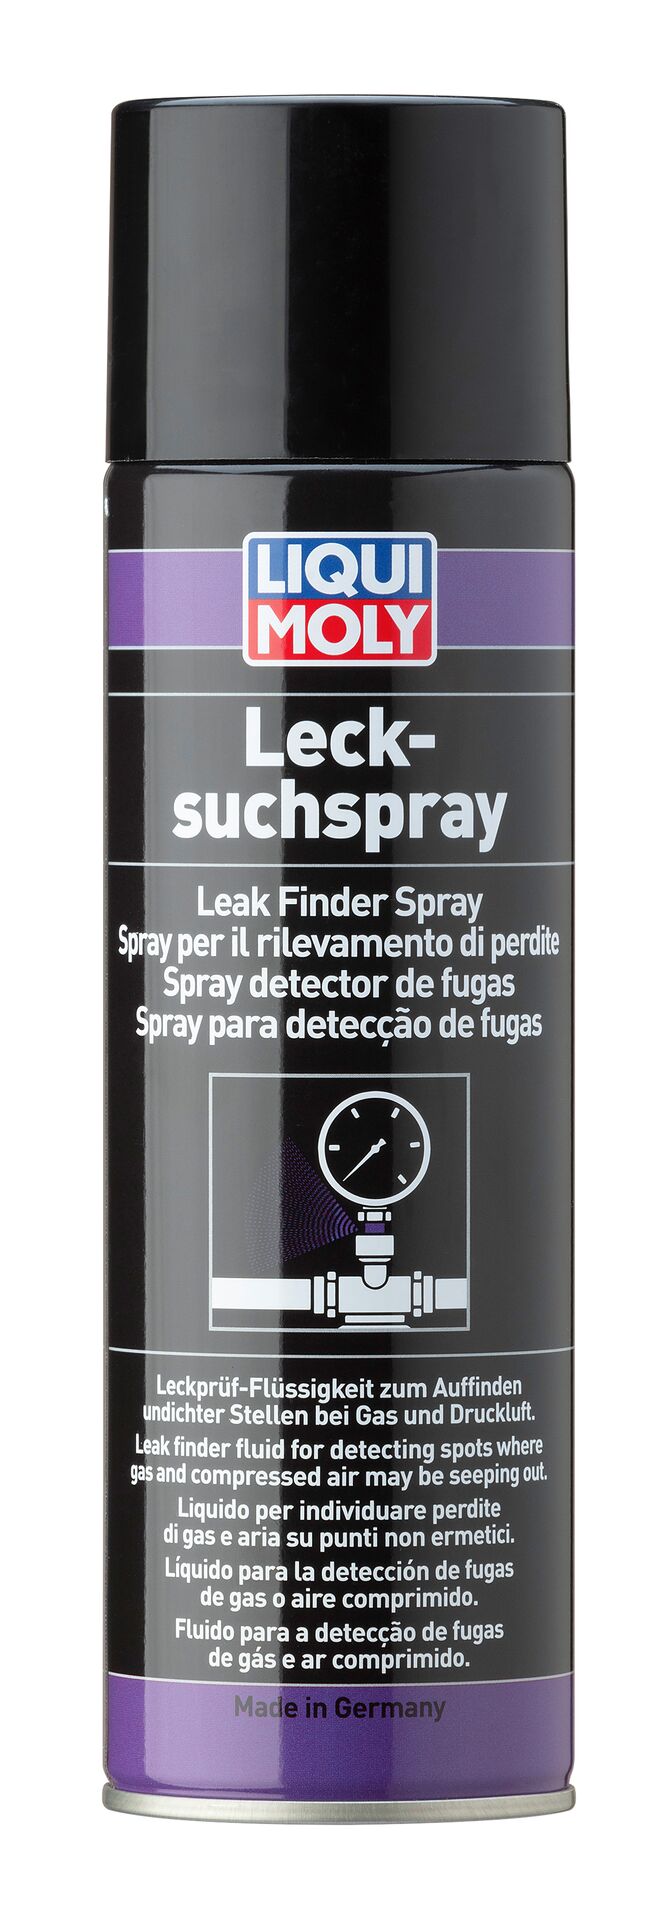 Liqui Moly Lacksucher Leck Such Spray Leckprüf Flüssigkeut Leak Finder 400 ml